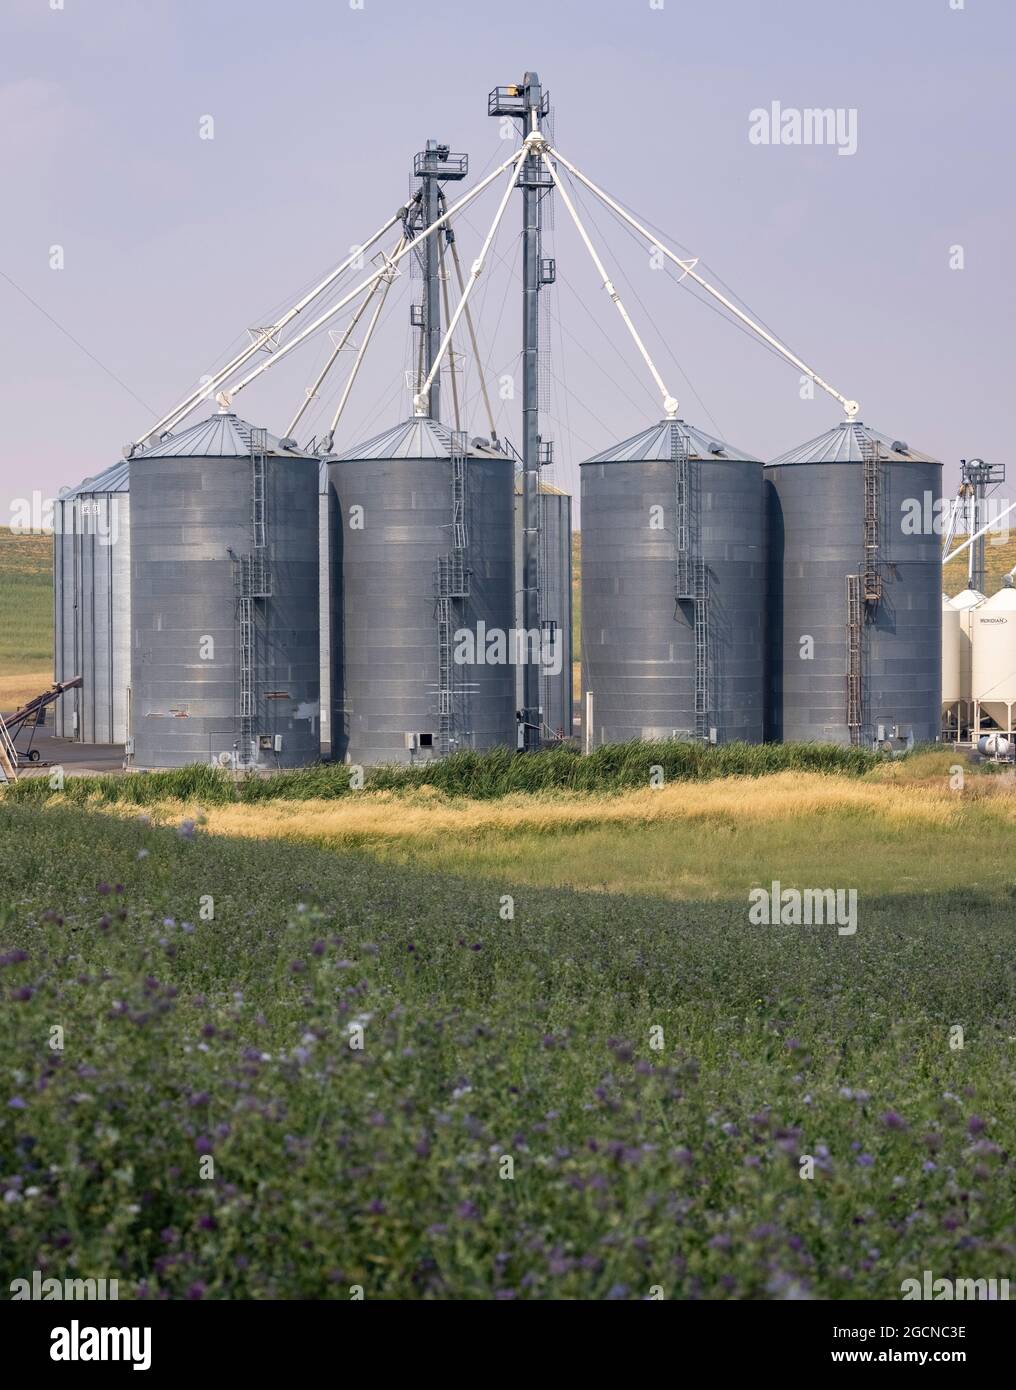 grain silos, near Pullman, Washington State, USA Stock Photo